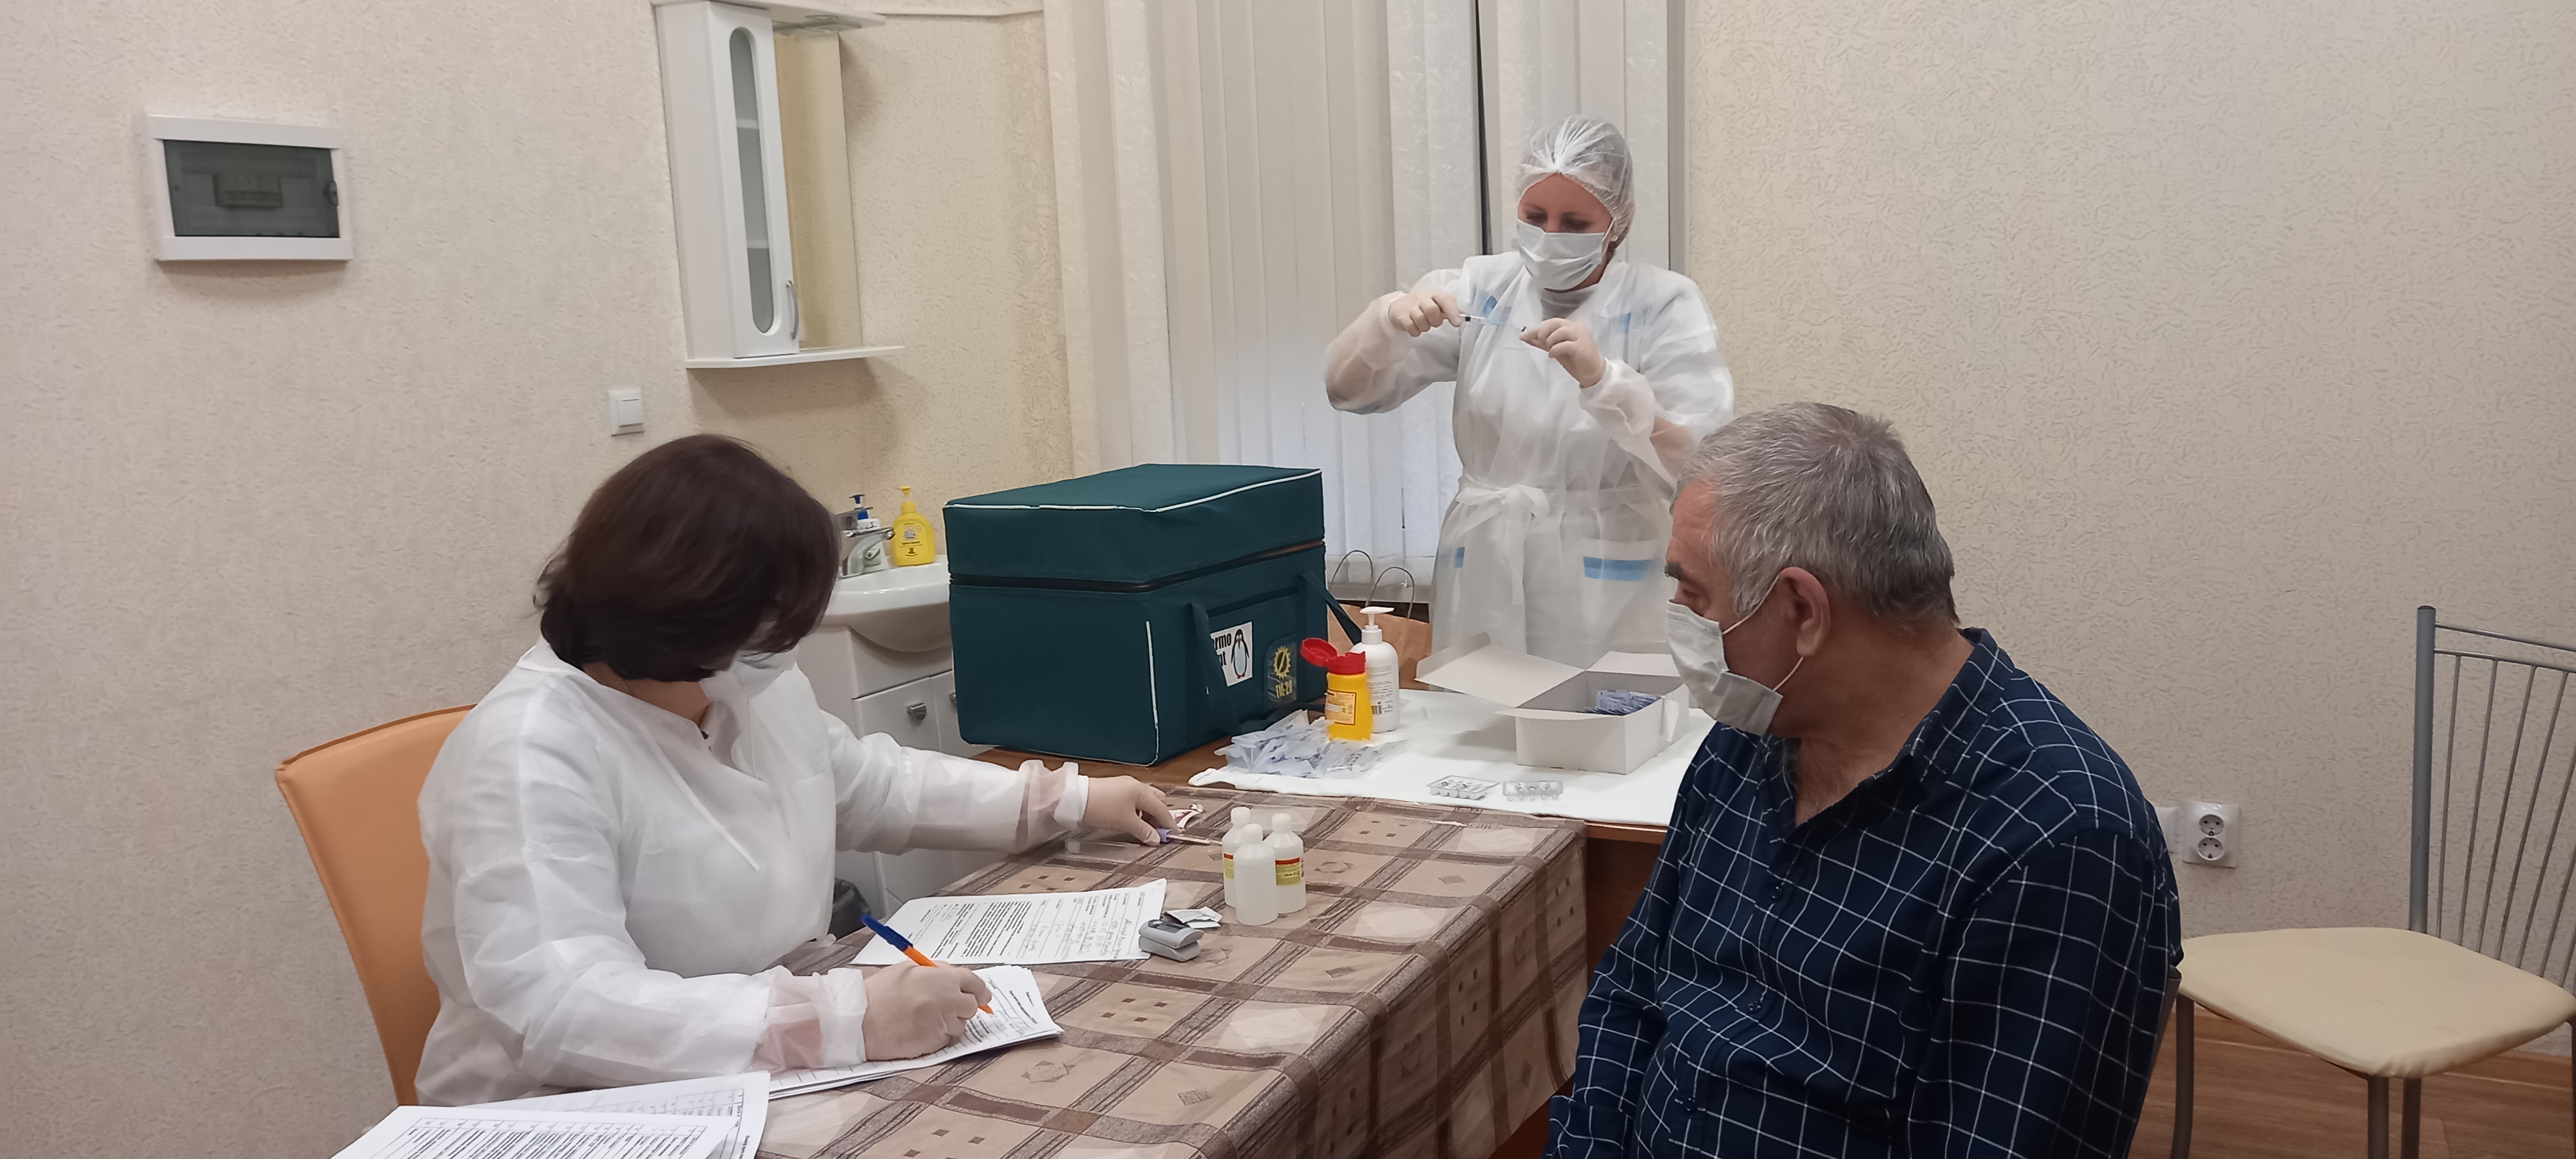 Работники торговли  вакцинируются в Кисловодске ⠀